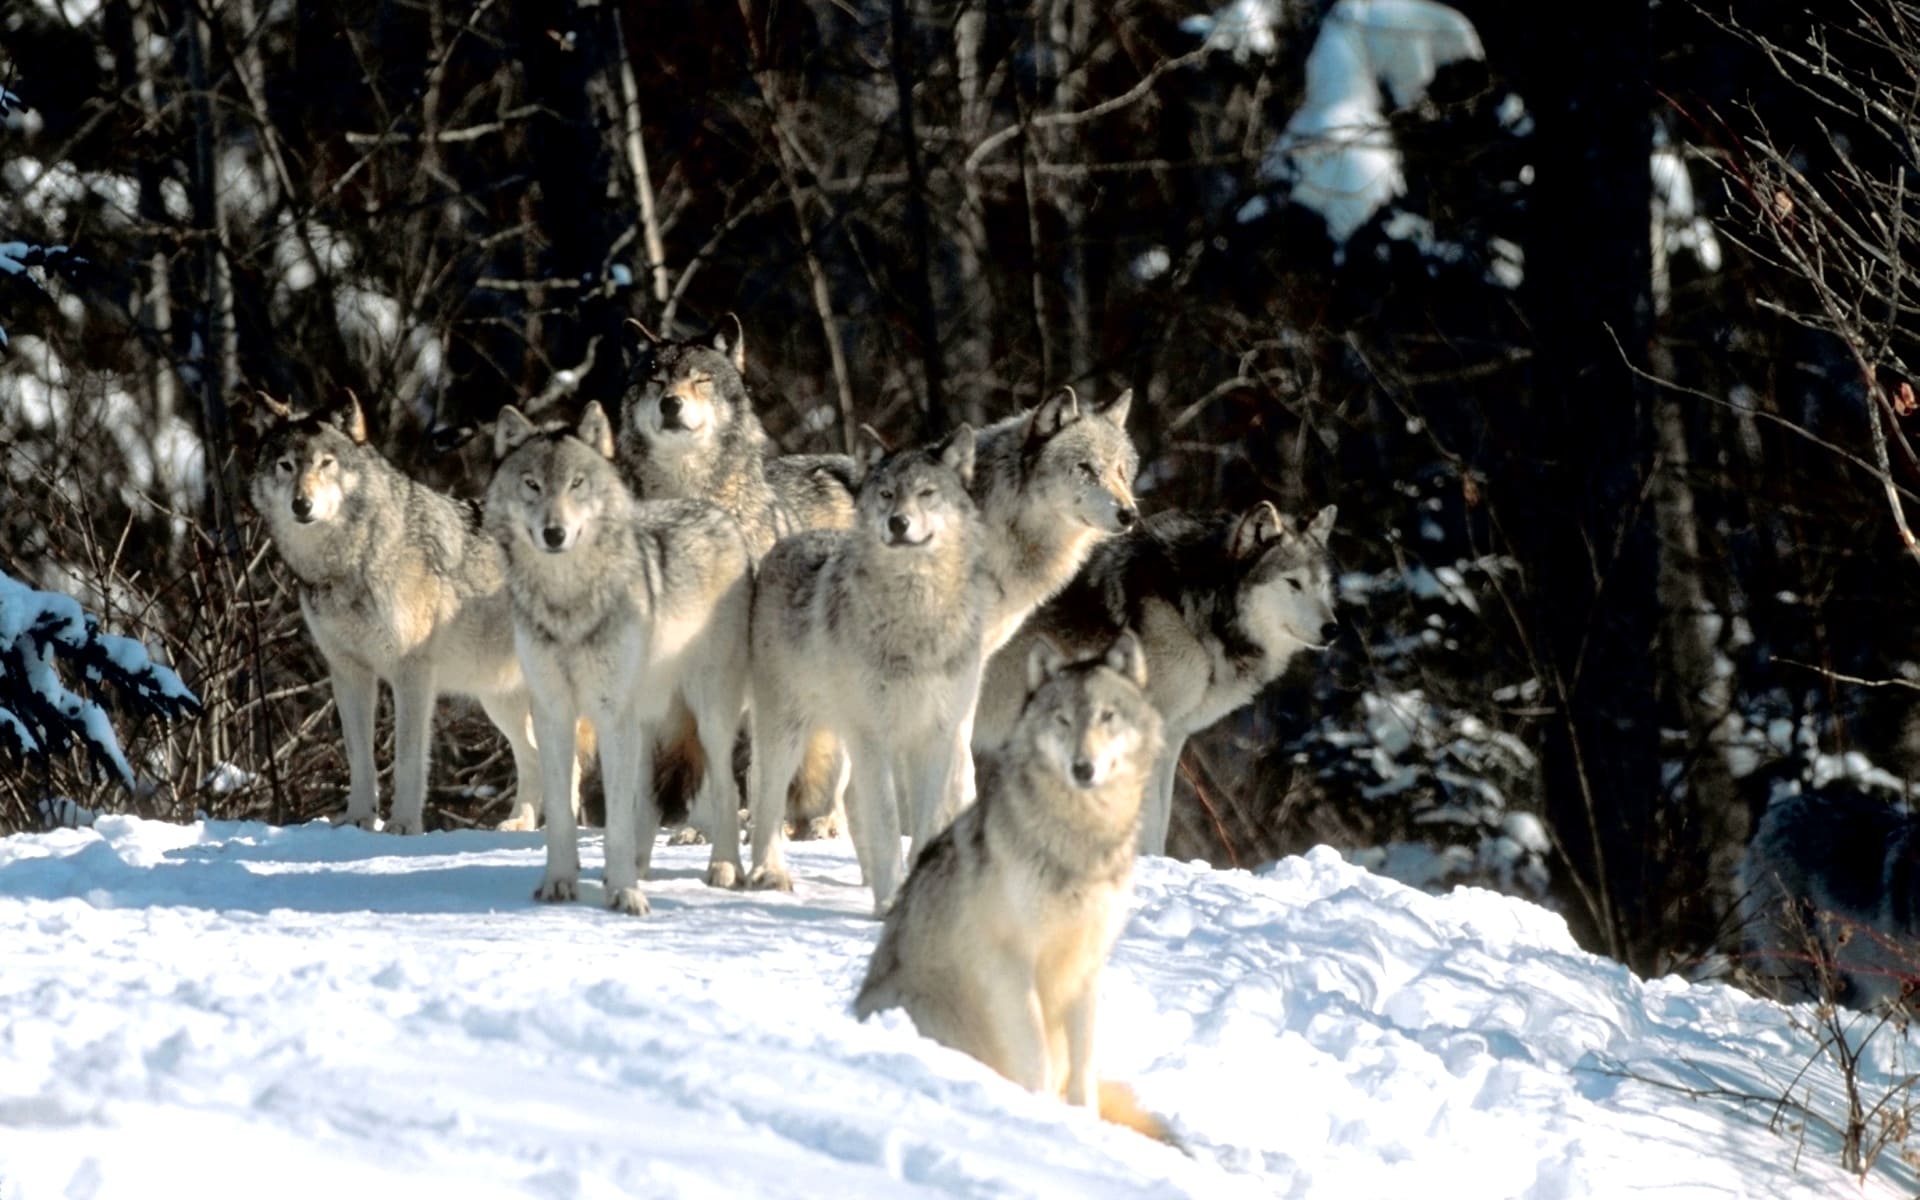 Семь больших волков с человеческими глазами